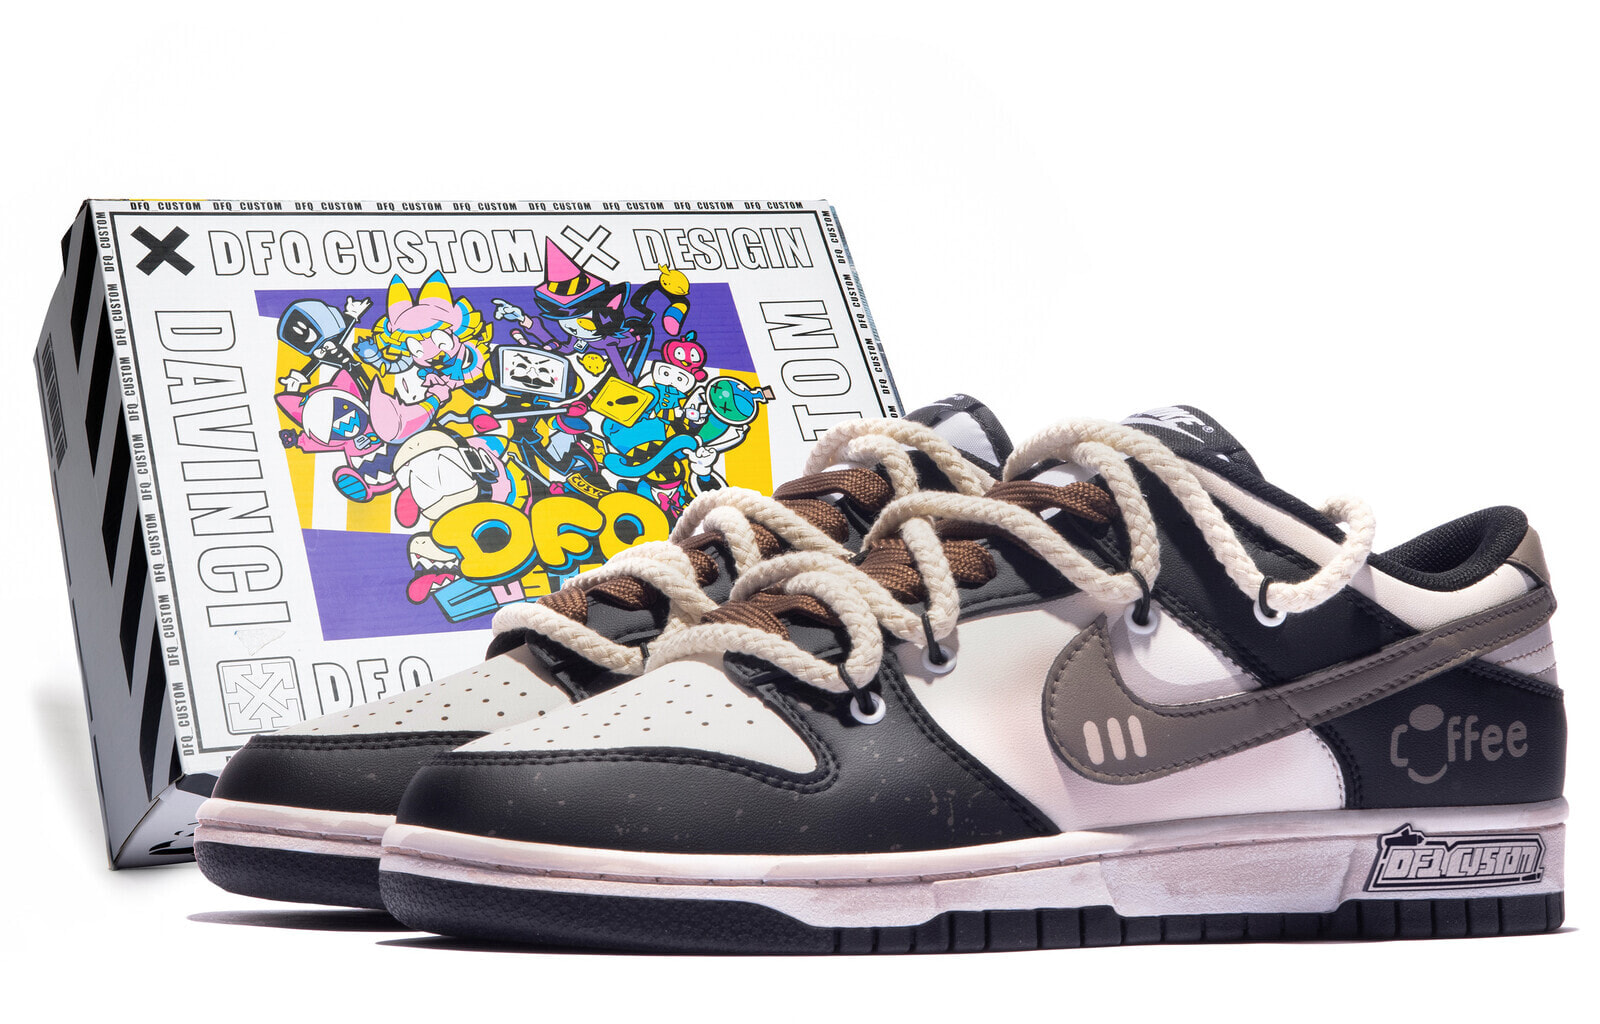 【定制球鞋】 Nike Dunk Low 特殊鞋盒 经典美式 咖啡 复古 低帮 板鞋 GS 米白黑棕 / Кроссовки Nike Dunk Low CW1590-100